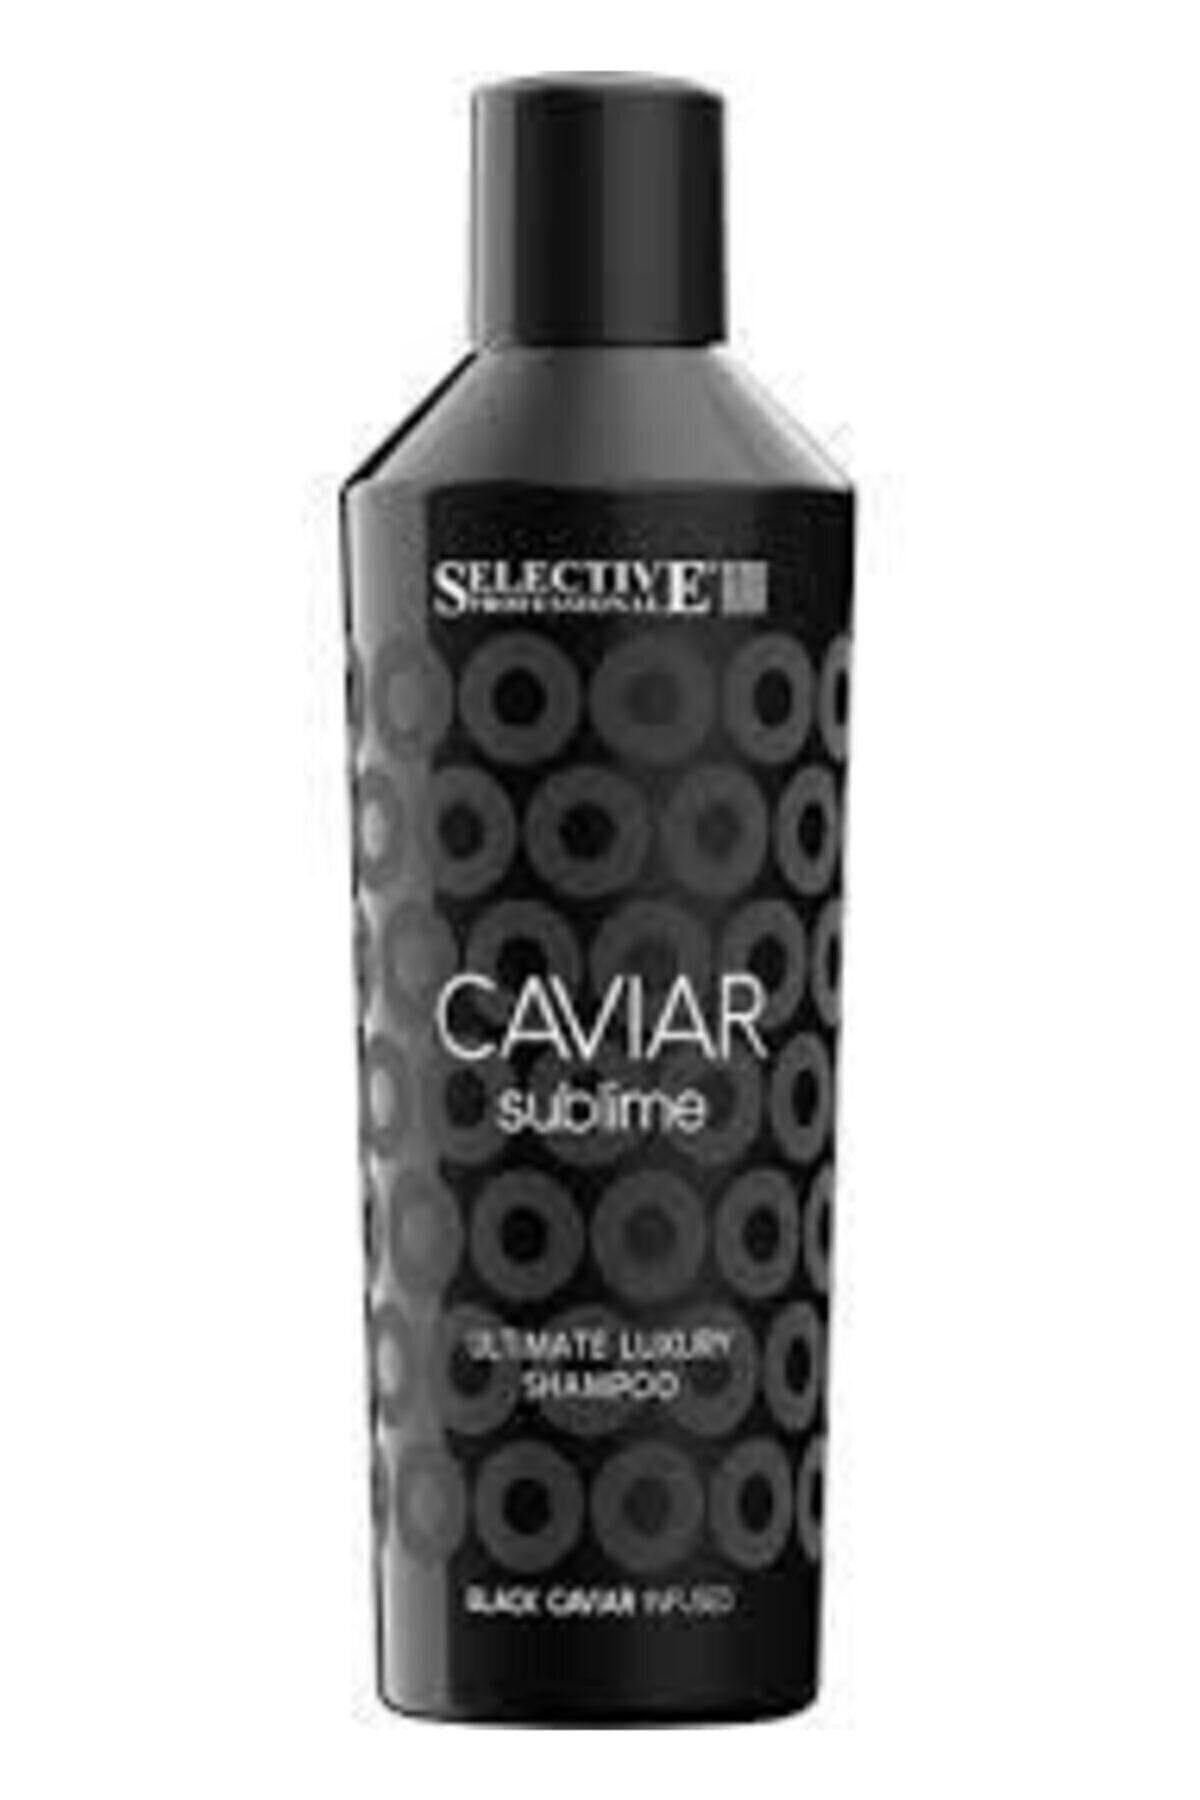 Selective Caviar Sublime Ultimate Luxury Şampuan   100 ml